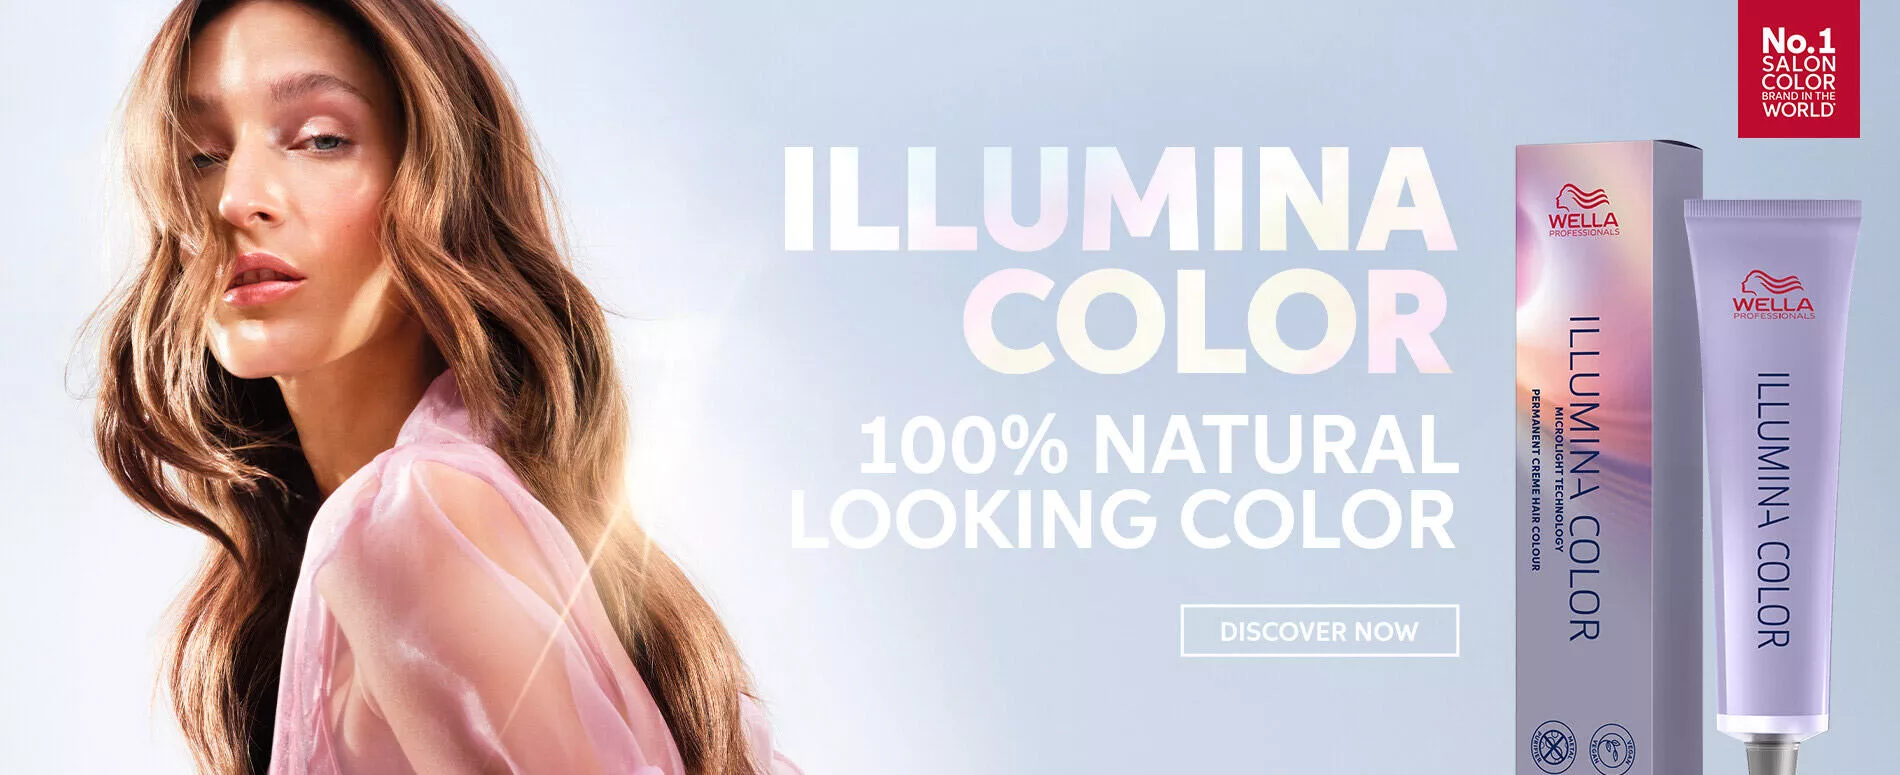 Μοντέλο με ανοιχτά καστανά κυματιστά μαλλιά δίπλα στις φωτογραφίες του 100% φυσικού προϊόντος μαλλιών, Illumina Color από τη Wella Professionals